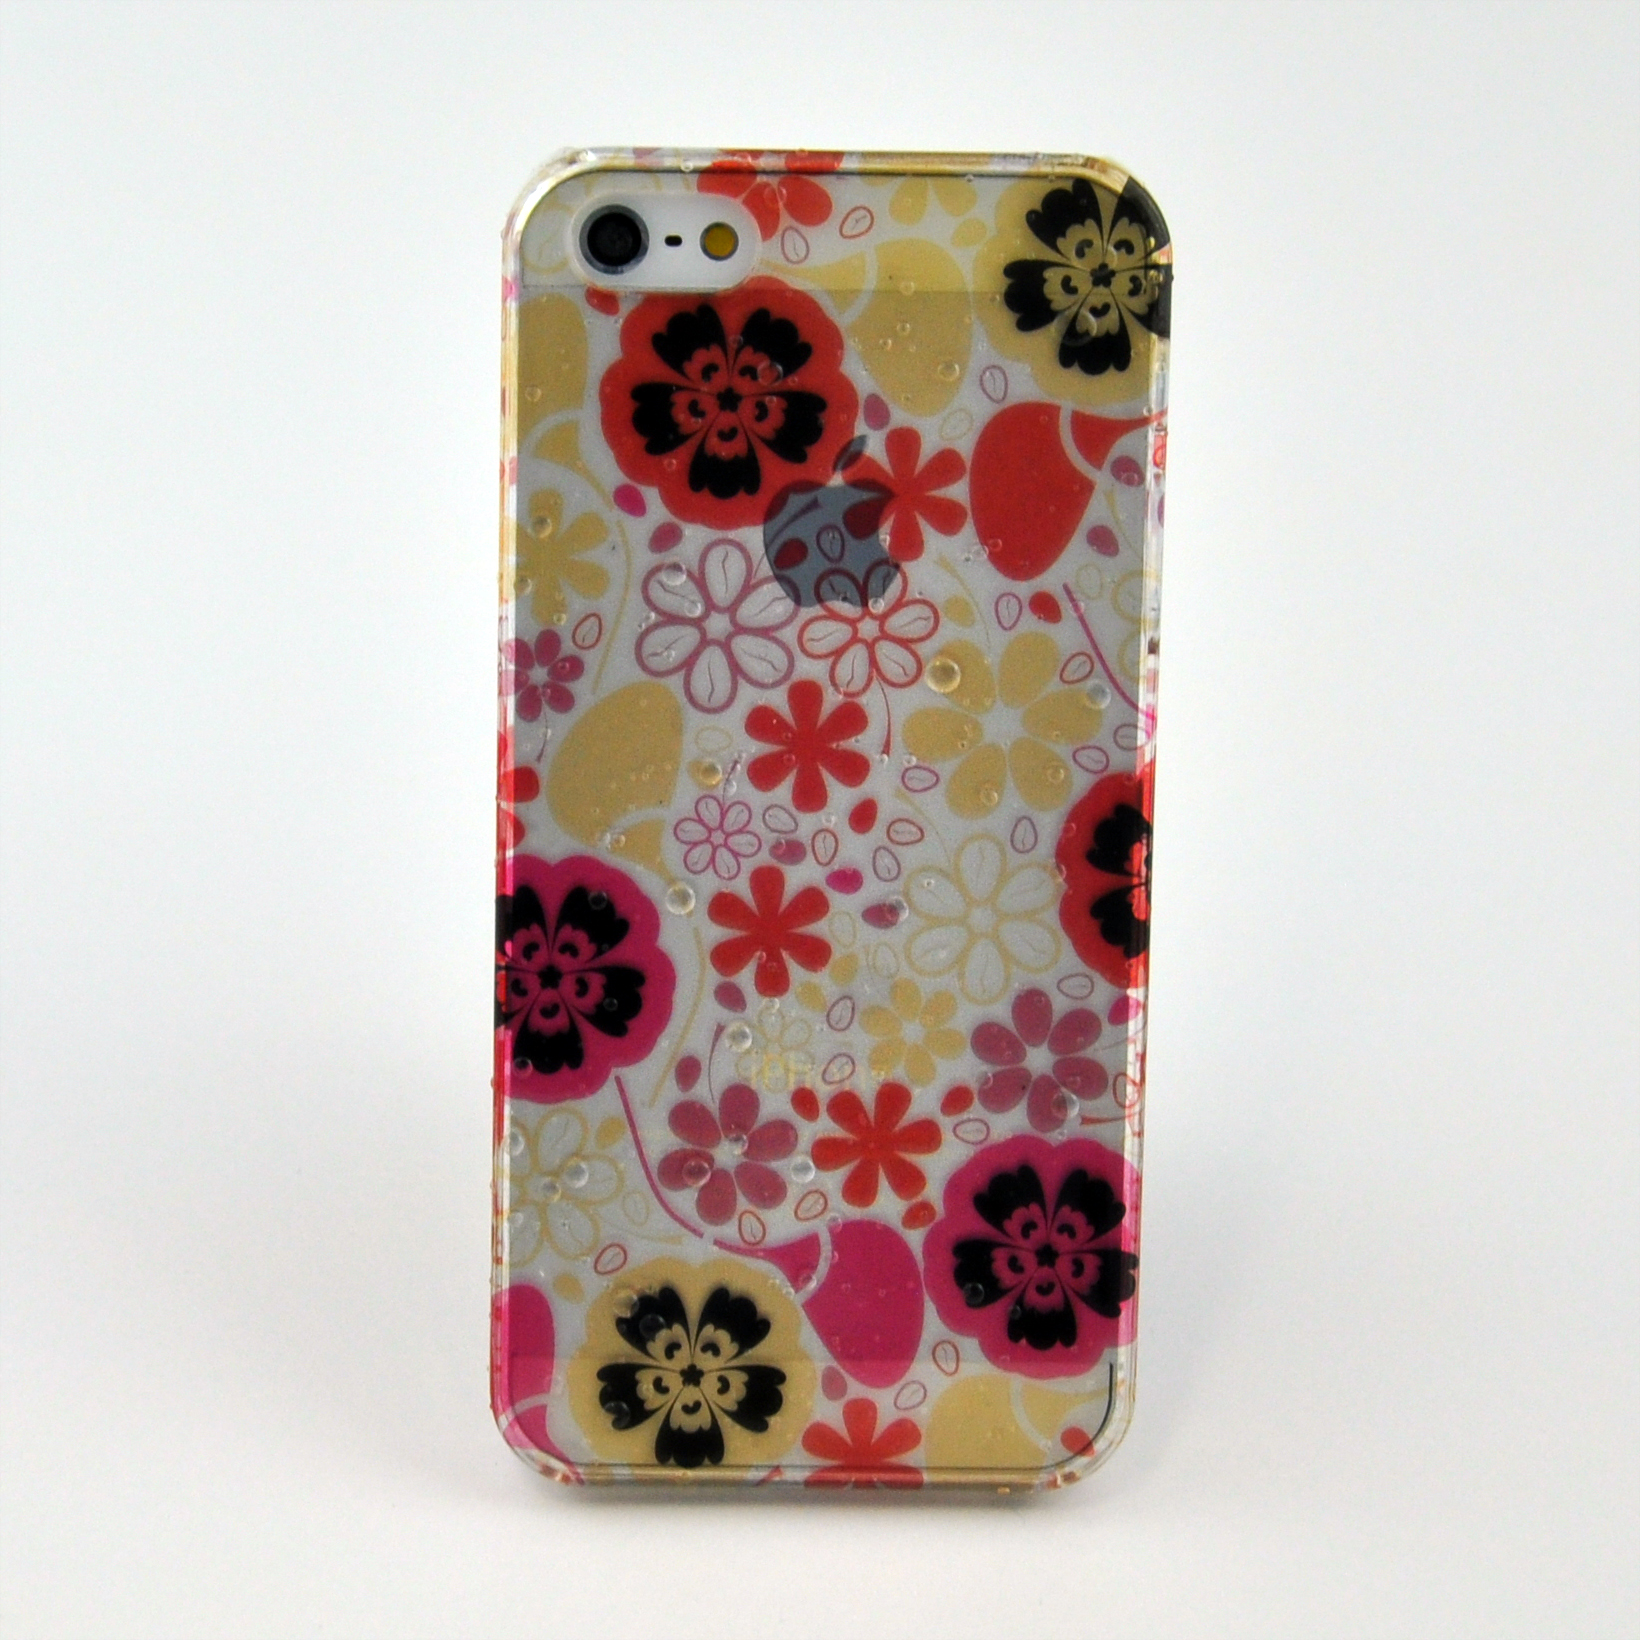 おしゃれなiPhone 5/5s カバー デザインクリア水滴ケース　016